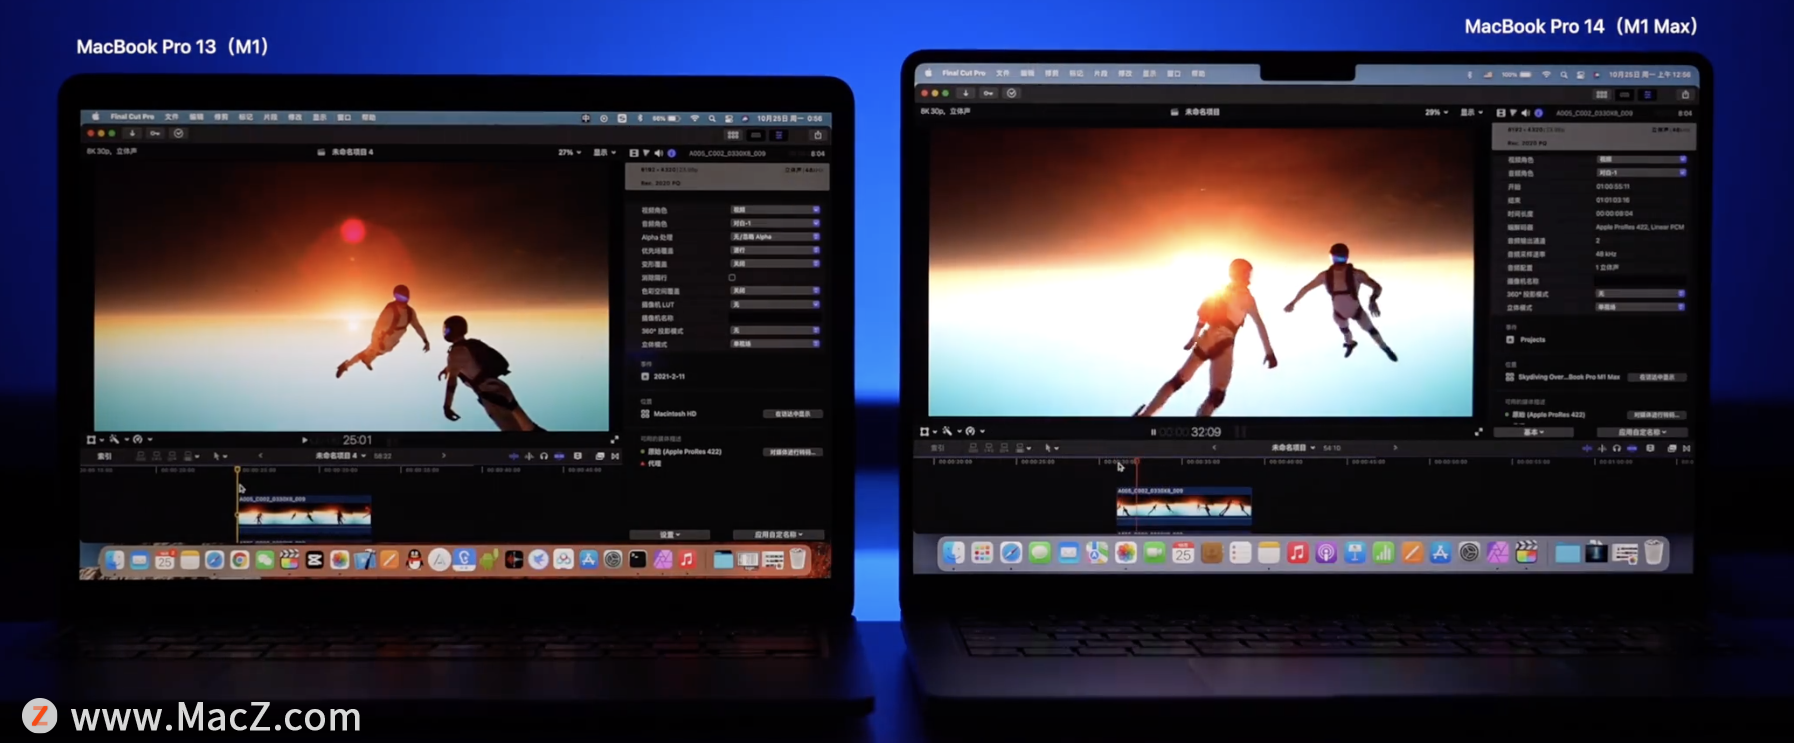 14寸全新 MacBook Pro 开箱测评 最新资讯 第16张